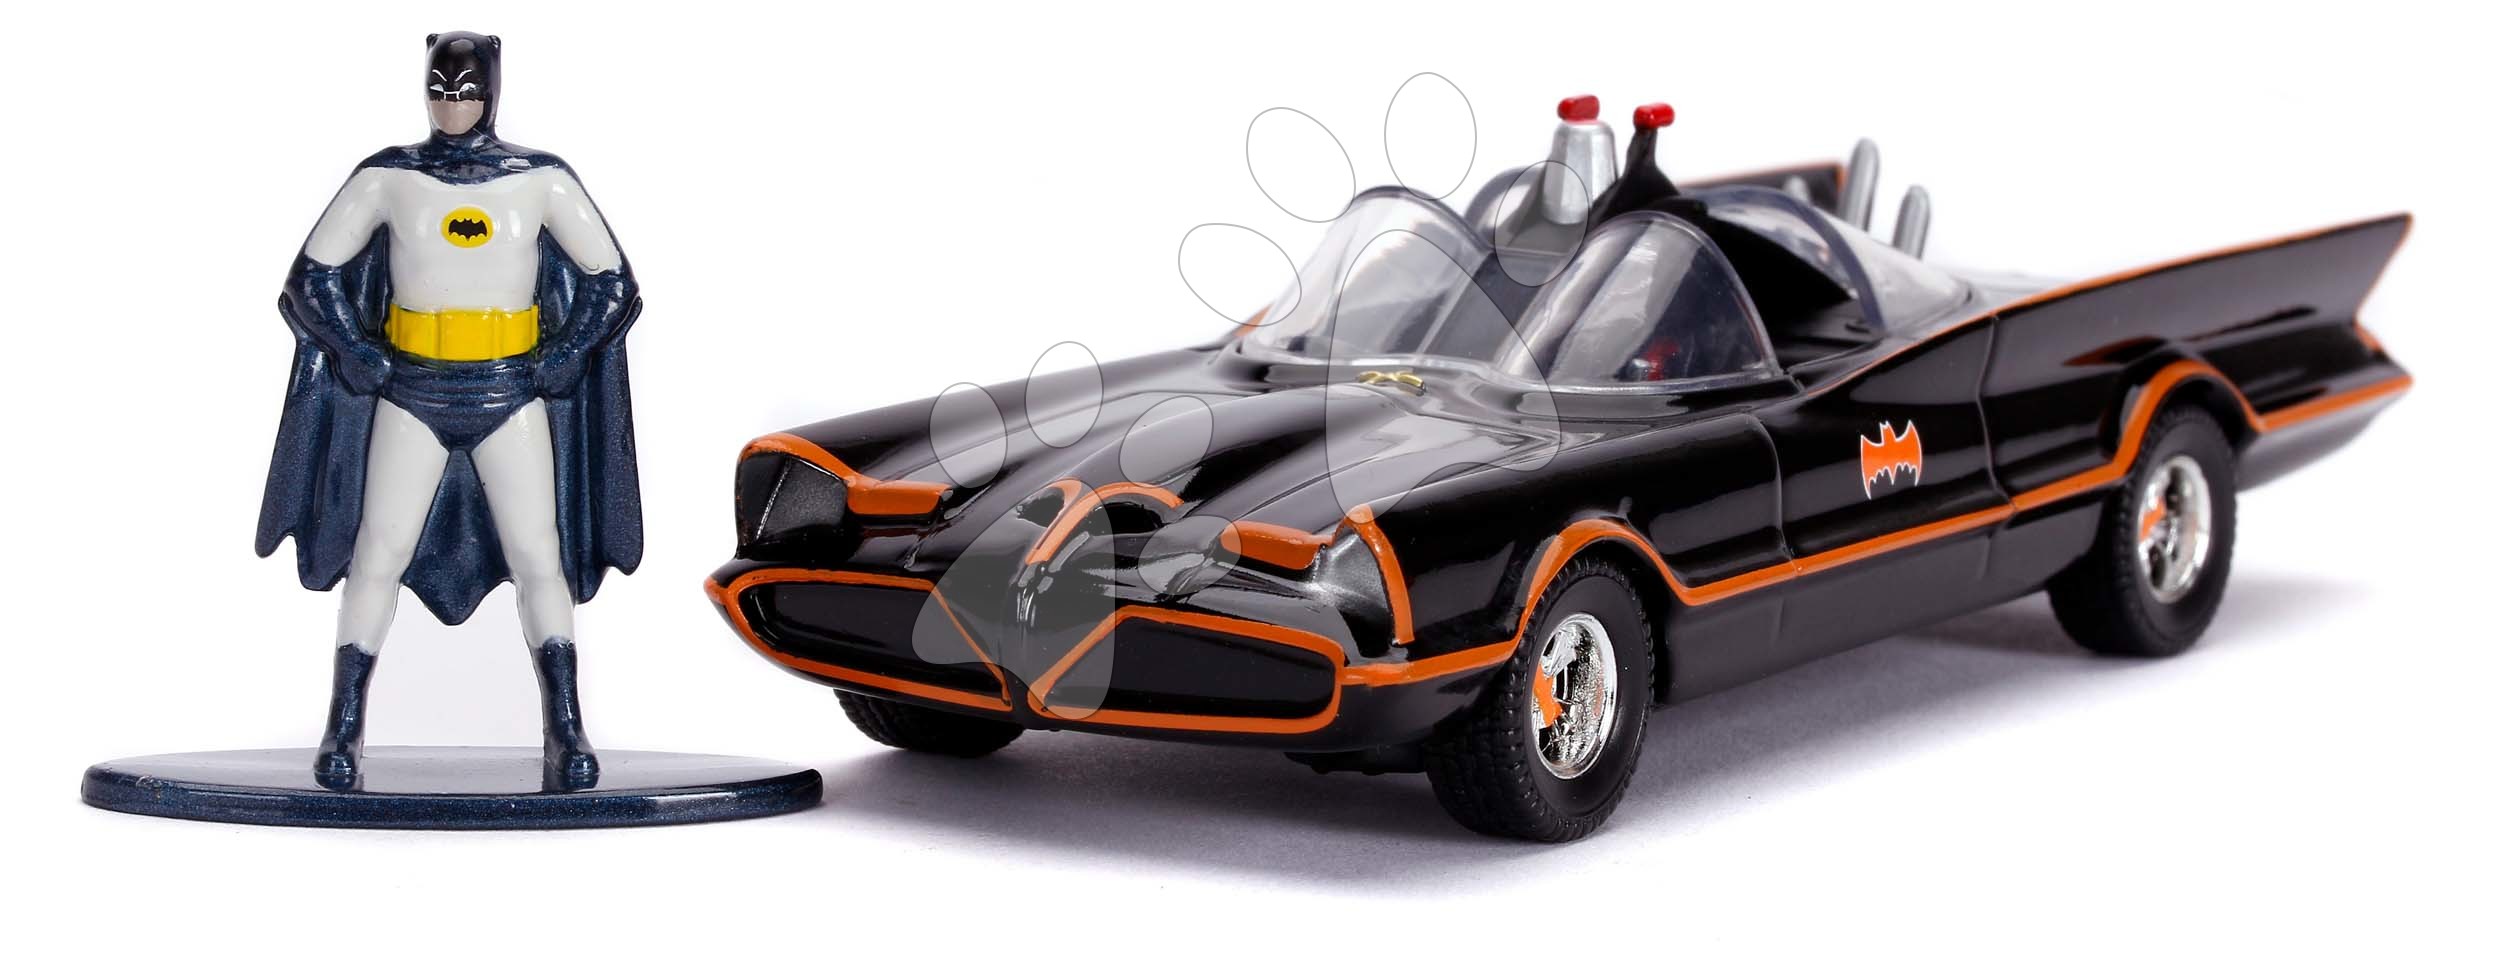 Kisautó Batman Classic Batmobil 1966 Jada fém Batman figurával hossza 12,7 cm 1:32